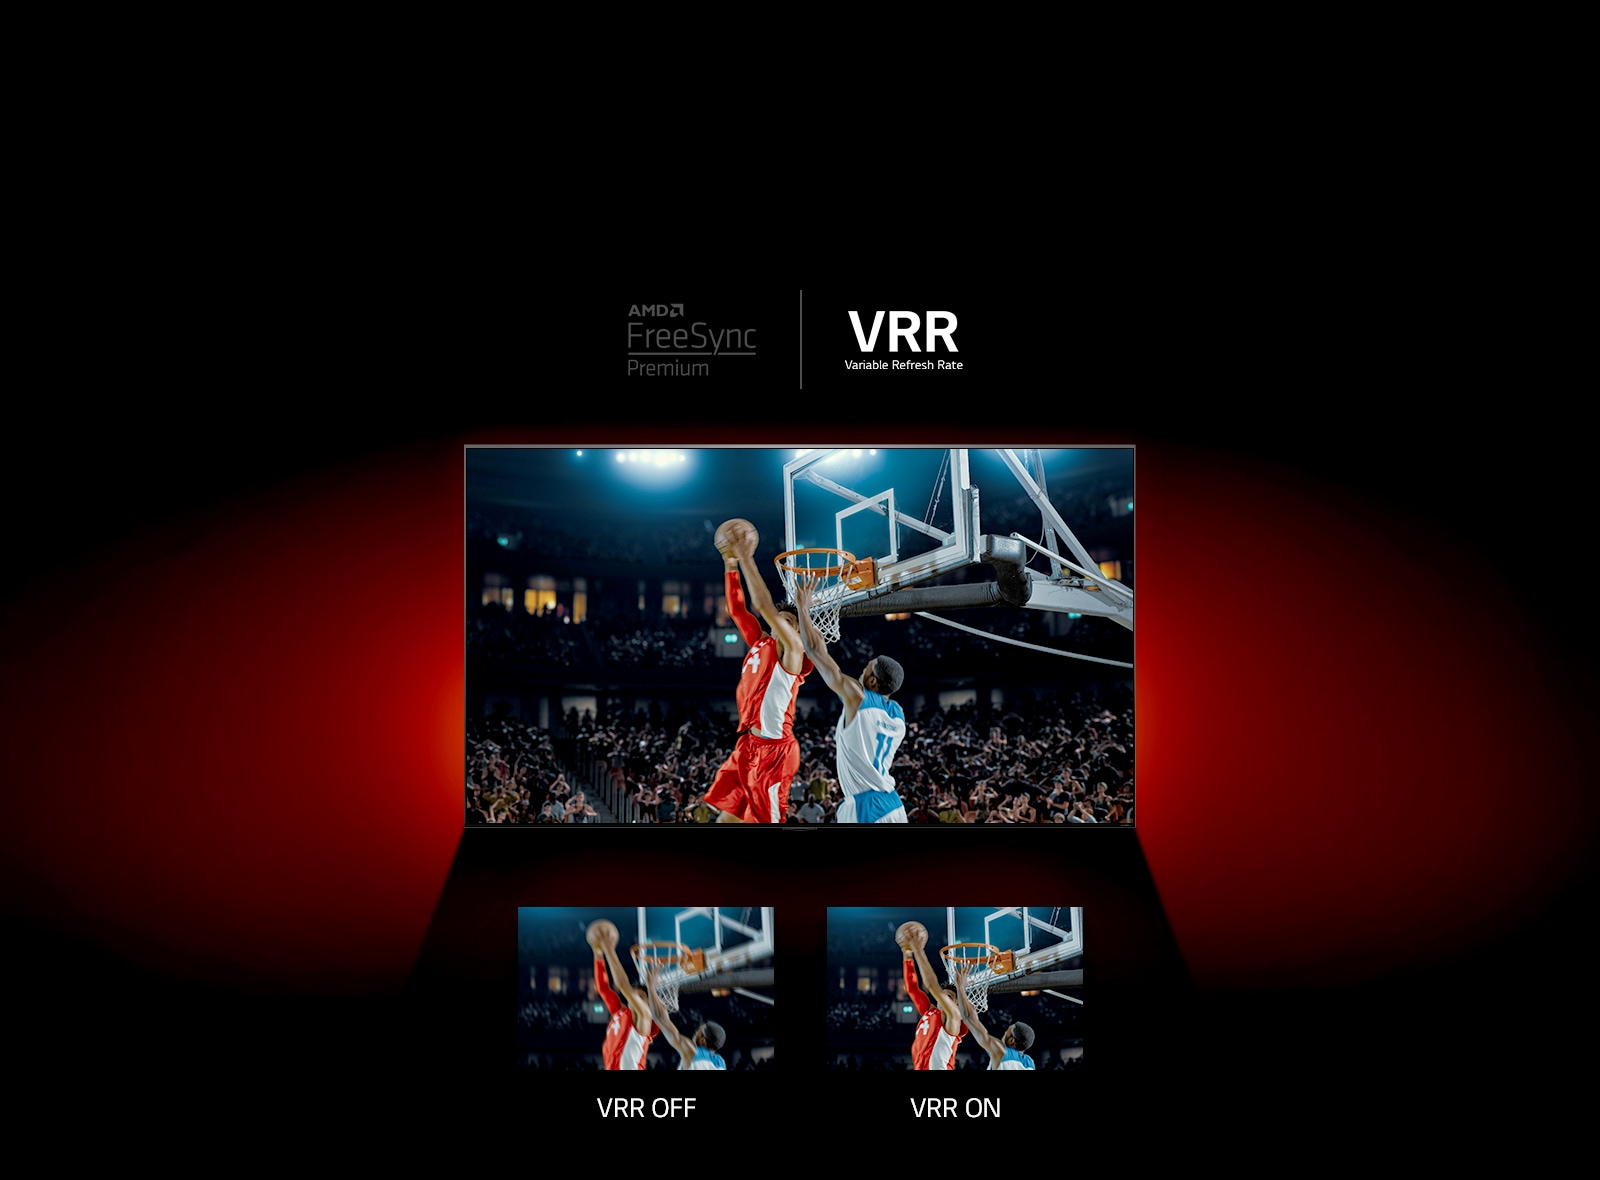 Před červenou stěnou je umístěn televizor, který přehrává basketbalový zápas. na záběru vidíme dva hráče. Vpravo dole jsou dva stejné obrázky. Na tom vlevo, který je rozmazaný, je nápis Bez VRR, zatímco na tom vpravo je napsáno s VRR.